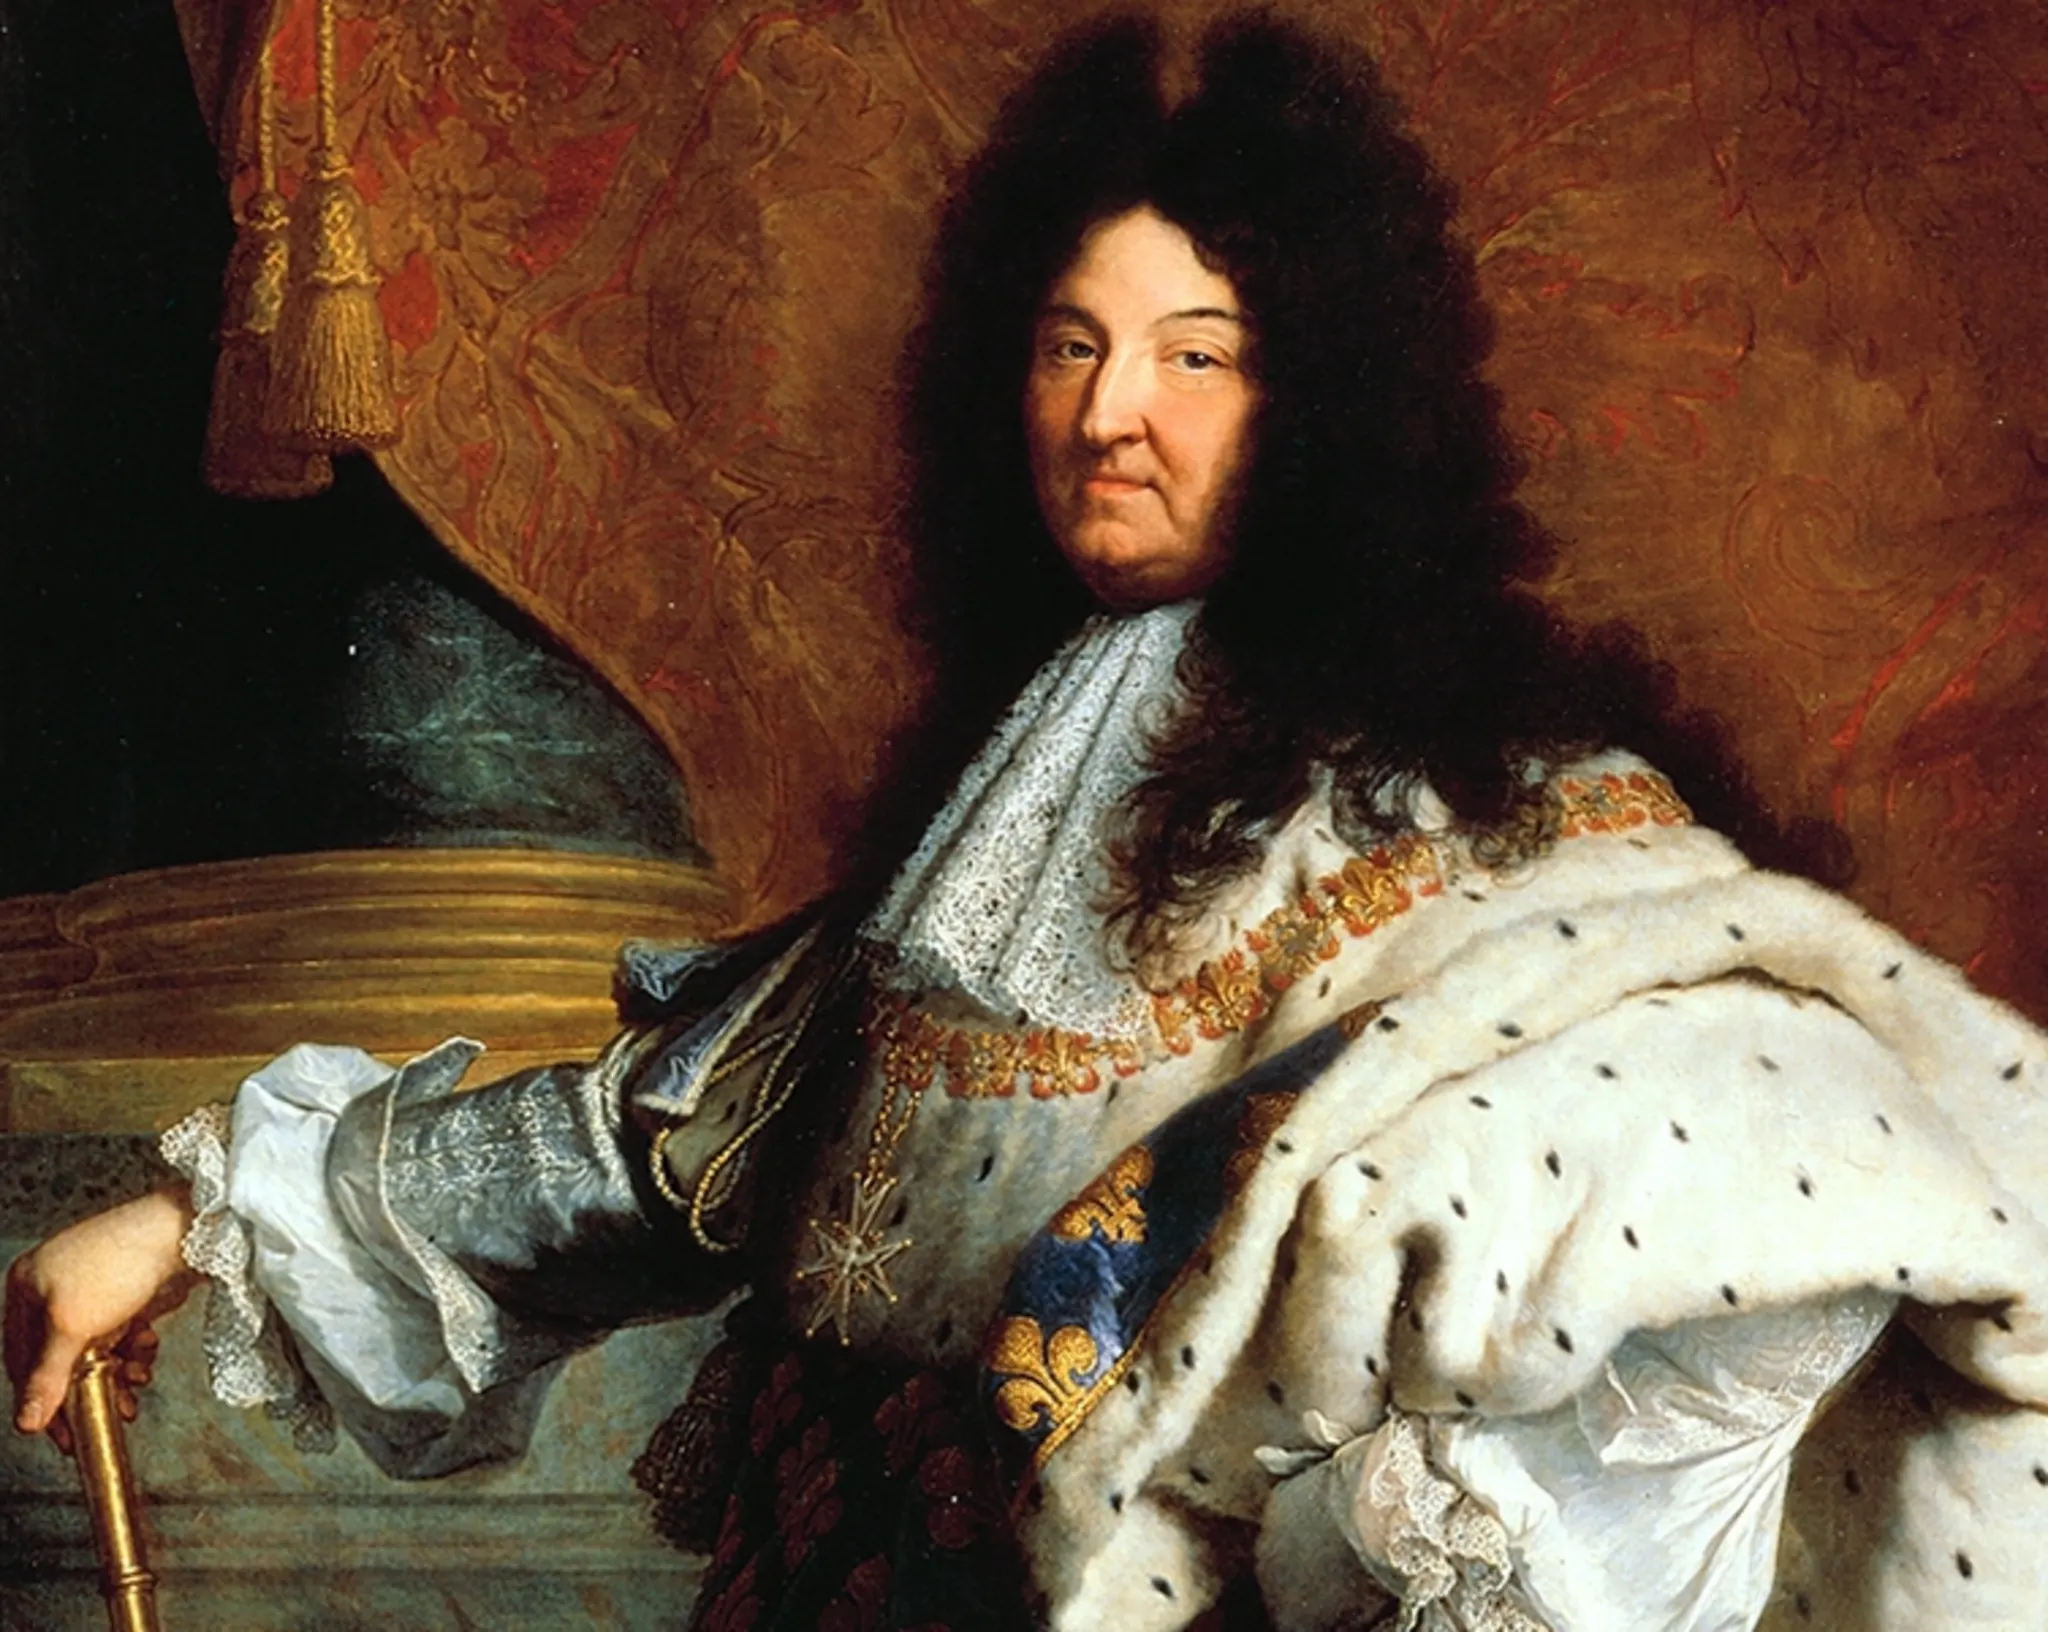 König Ludwig XIV. (1638-1715)